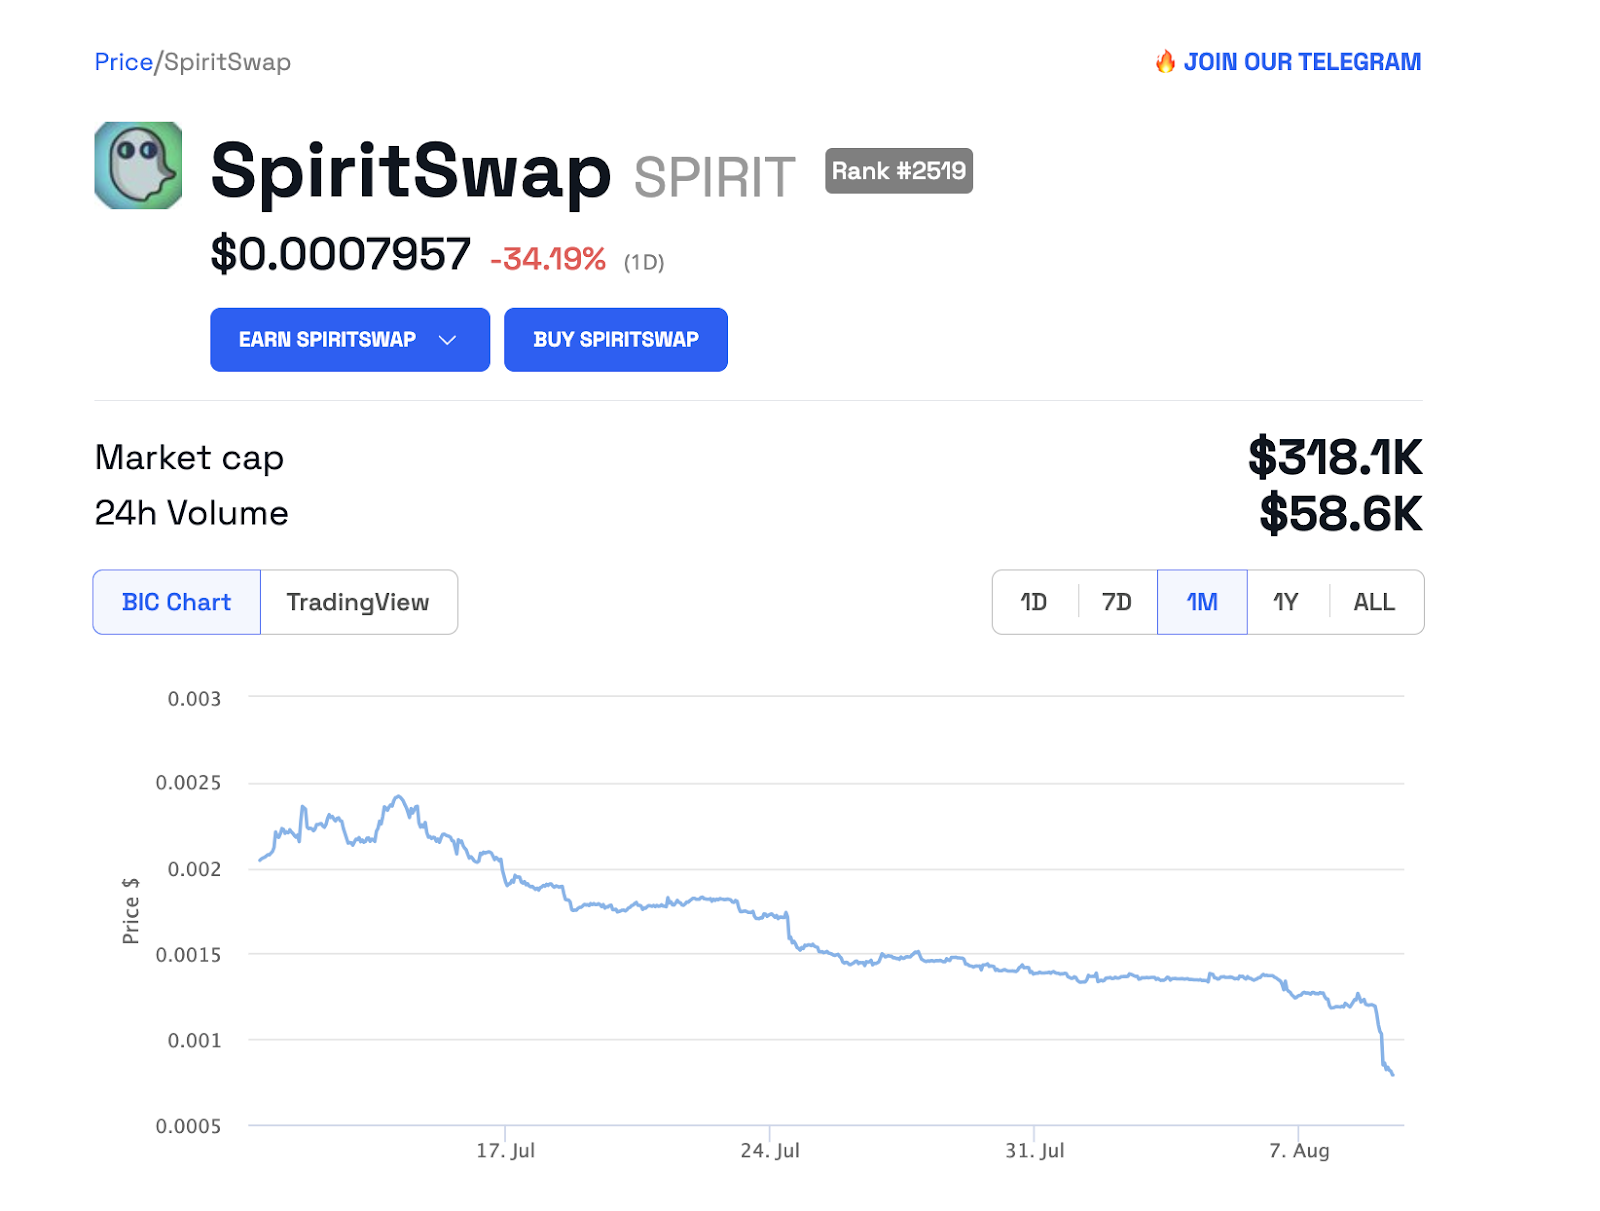 SPIRIT price from BeInCrypto